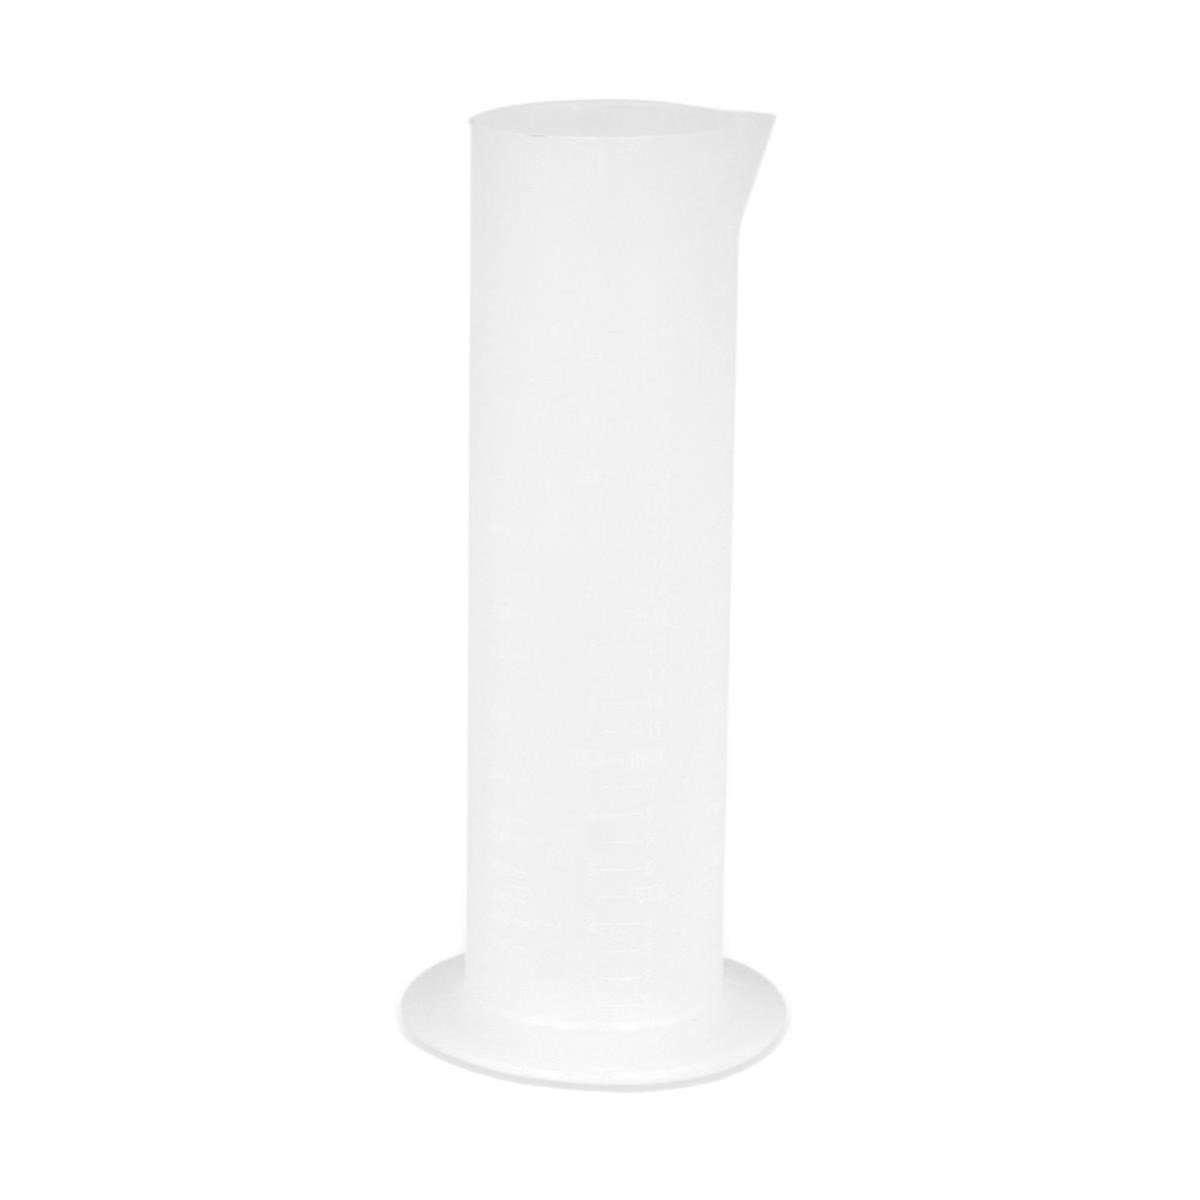 Acerbis Measuring Cup  Transparent, 500 ml pillar